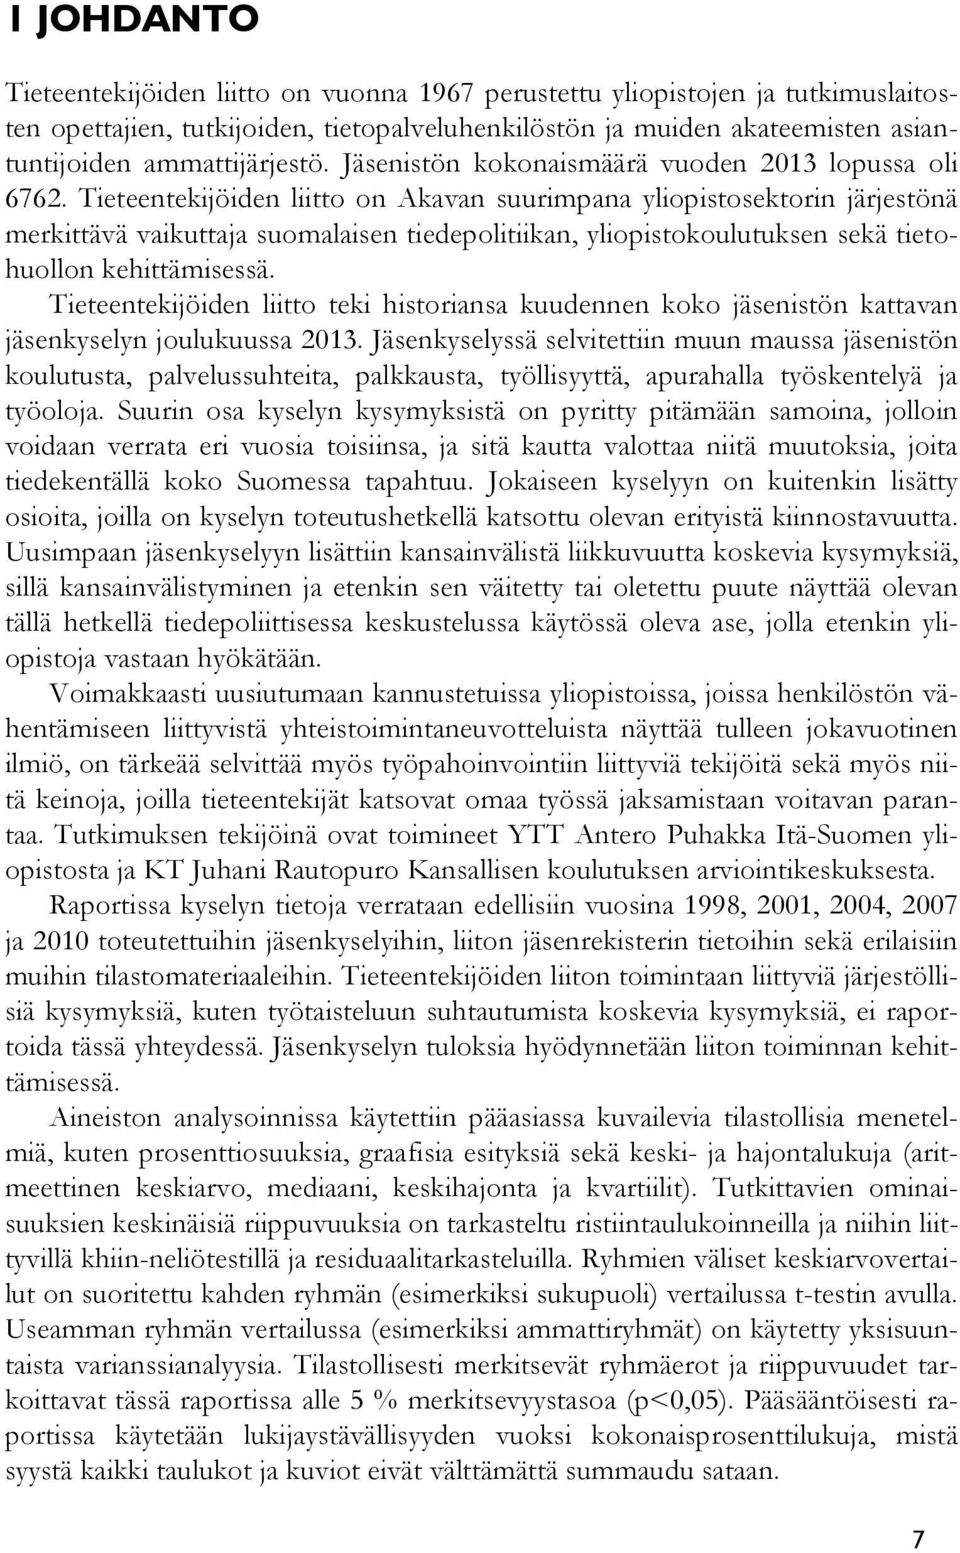 Tieteentekijöiden liitto on Akavan suurimpana yliopistosektorin järjestönä merkittävä vaikuttaja suomalaisen tiedepolitiikan, yliopistokoulutuksen sekä tietohuollon kehittämisessä.